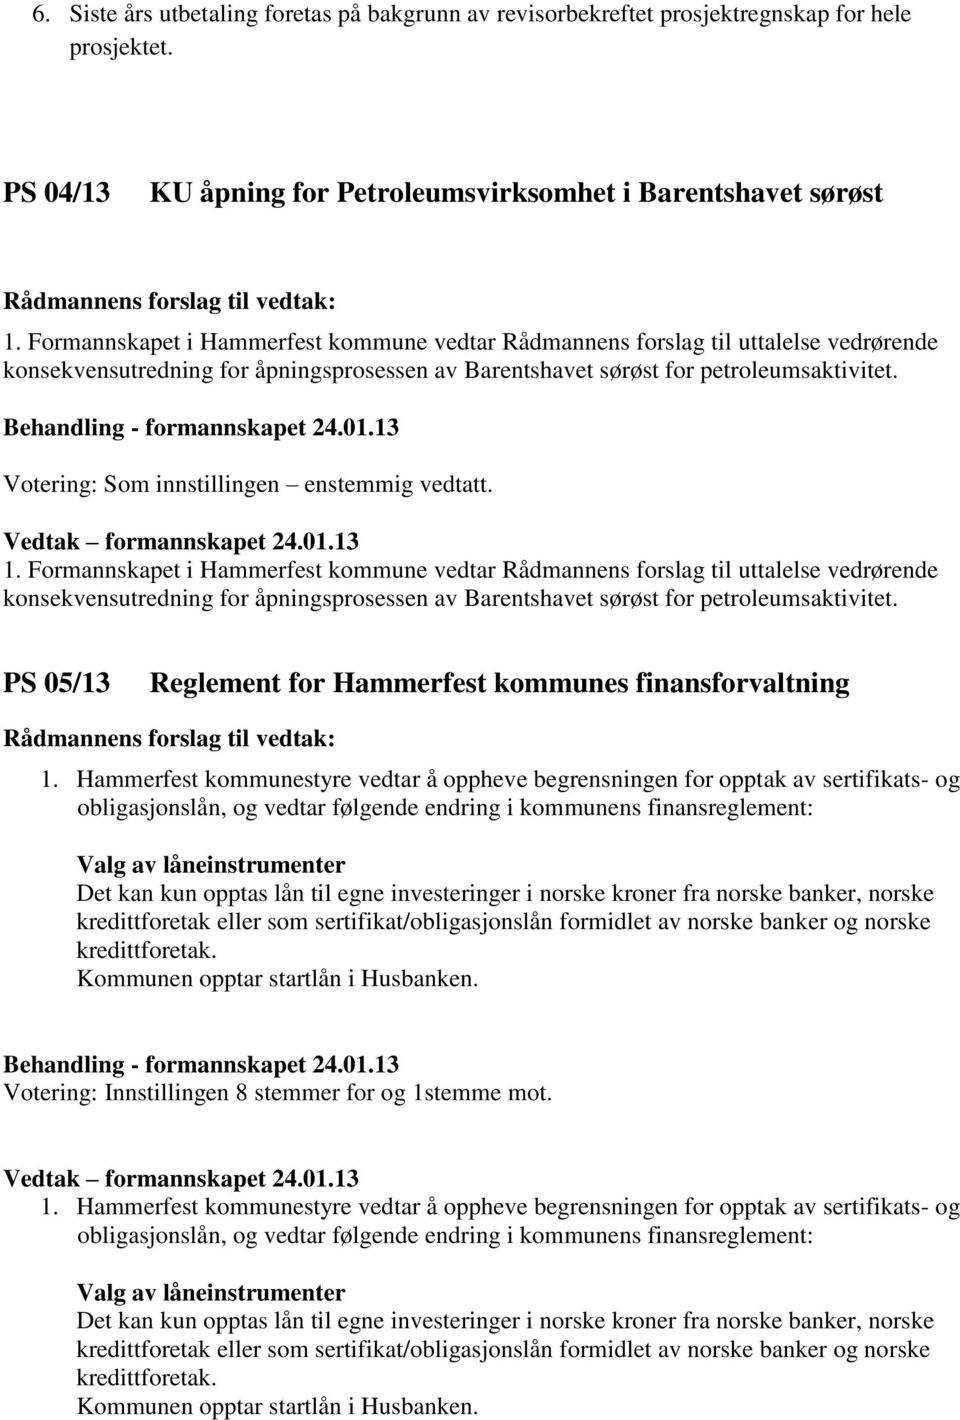 Formannskapet i Hammerfest kommune vedtar Rådmannens forslag til uttalelse vedrørende konsekvensutredning for åpningsprosessen av Barentshavet sørøst for petroleumsaktivitet.